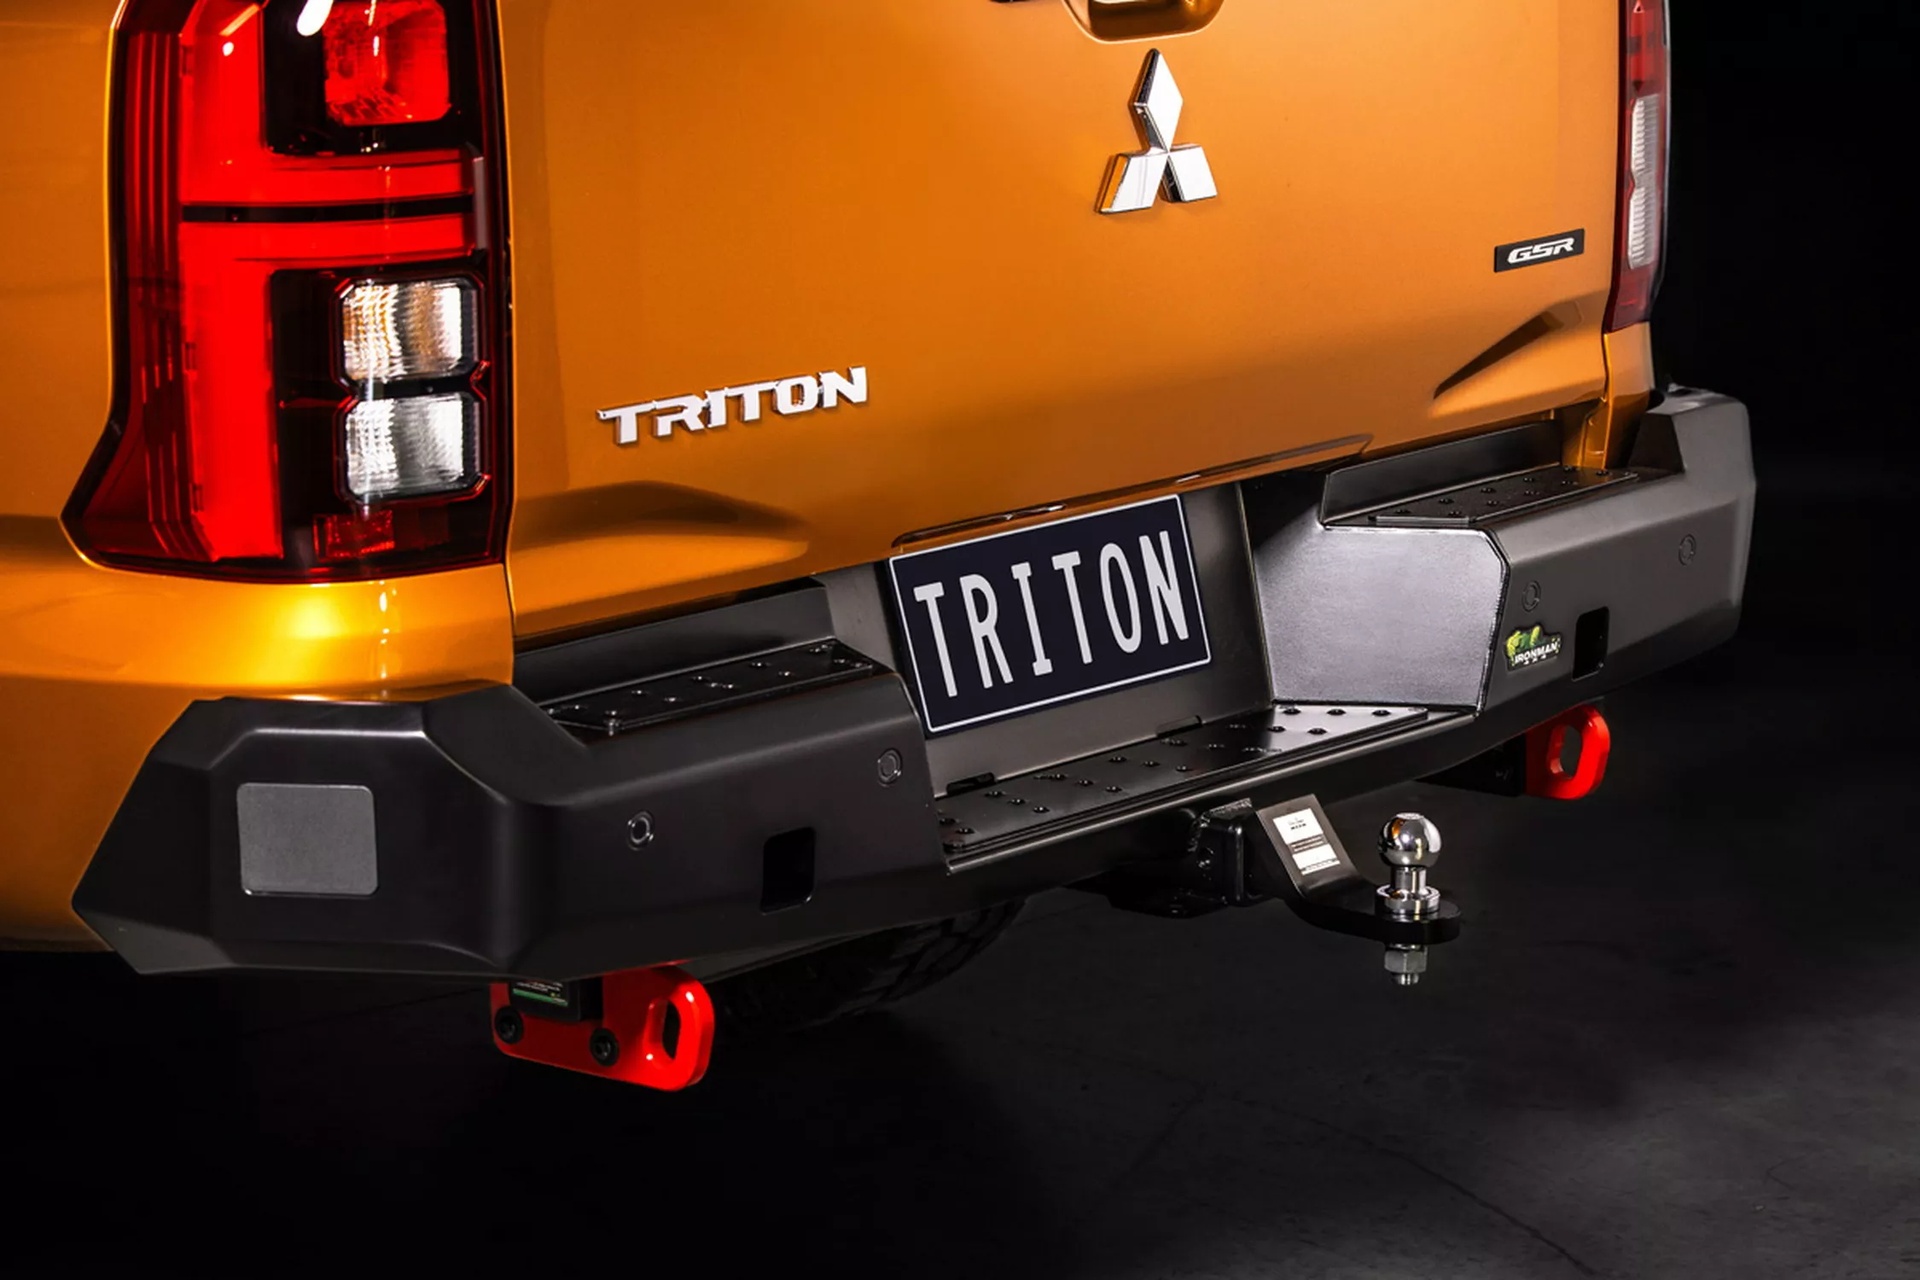 Bán tải Mitsubishi Triton hầm hố với gói độ địa hình của Ironman 4x4